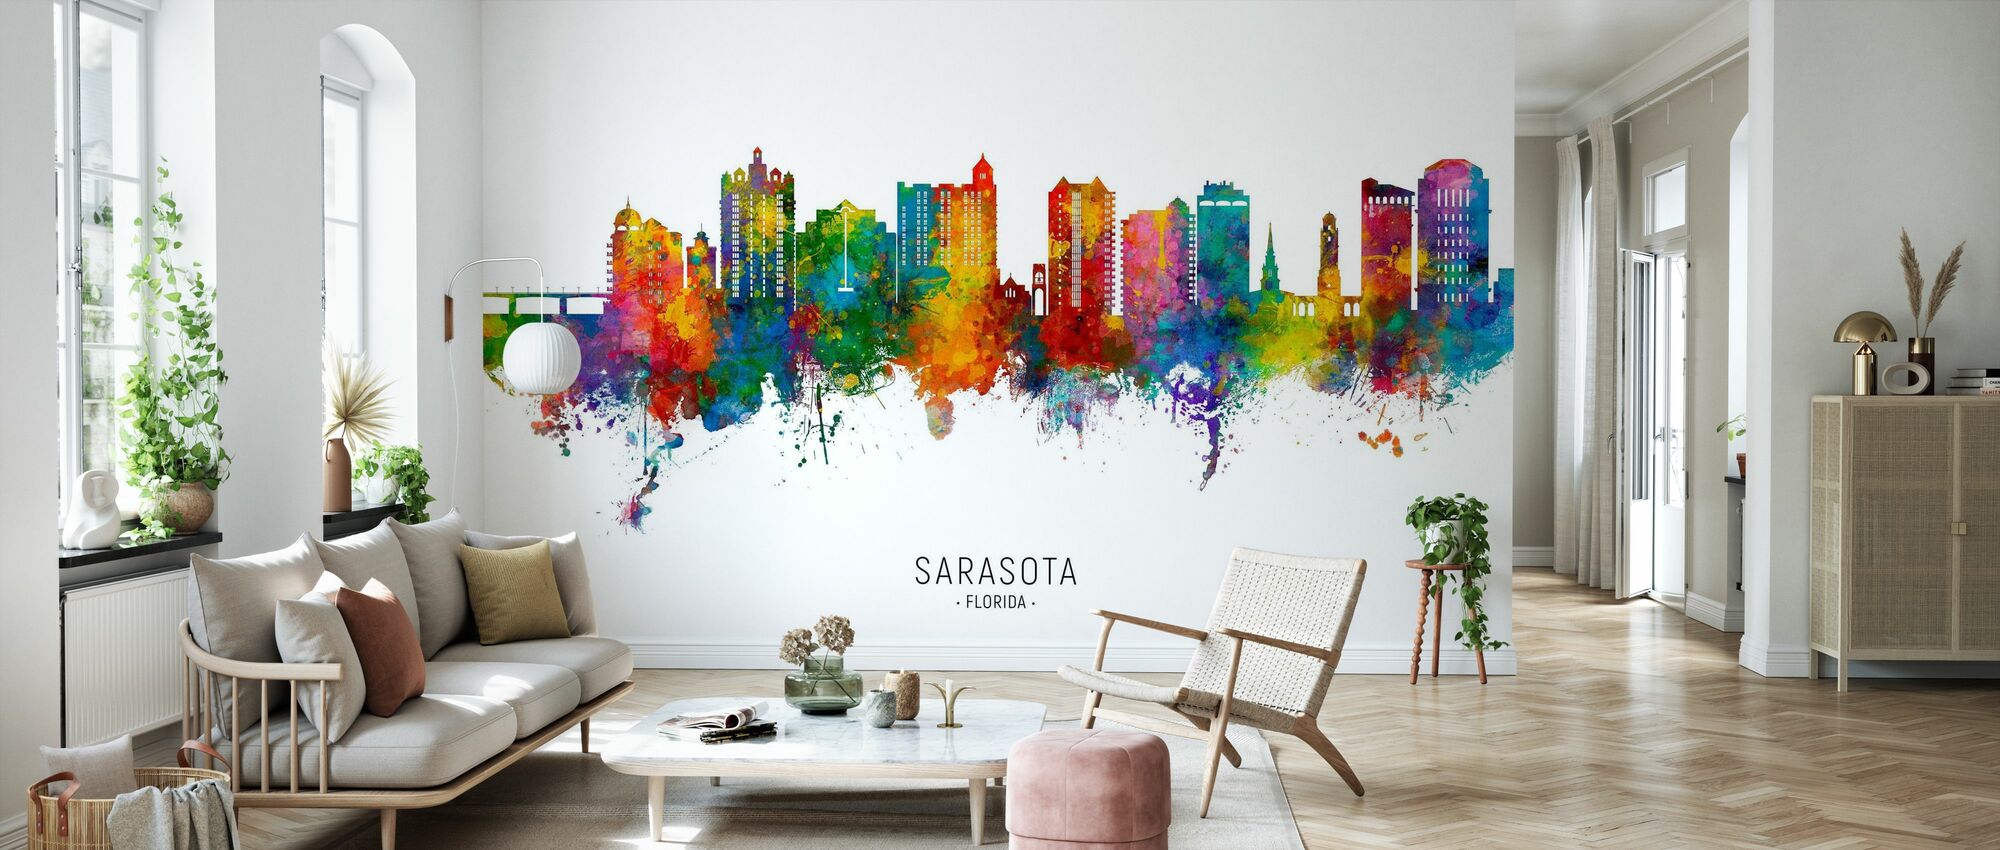 Sarasota Wallpapers